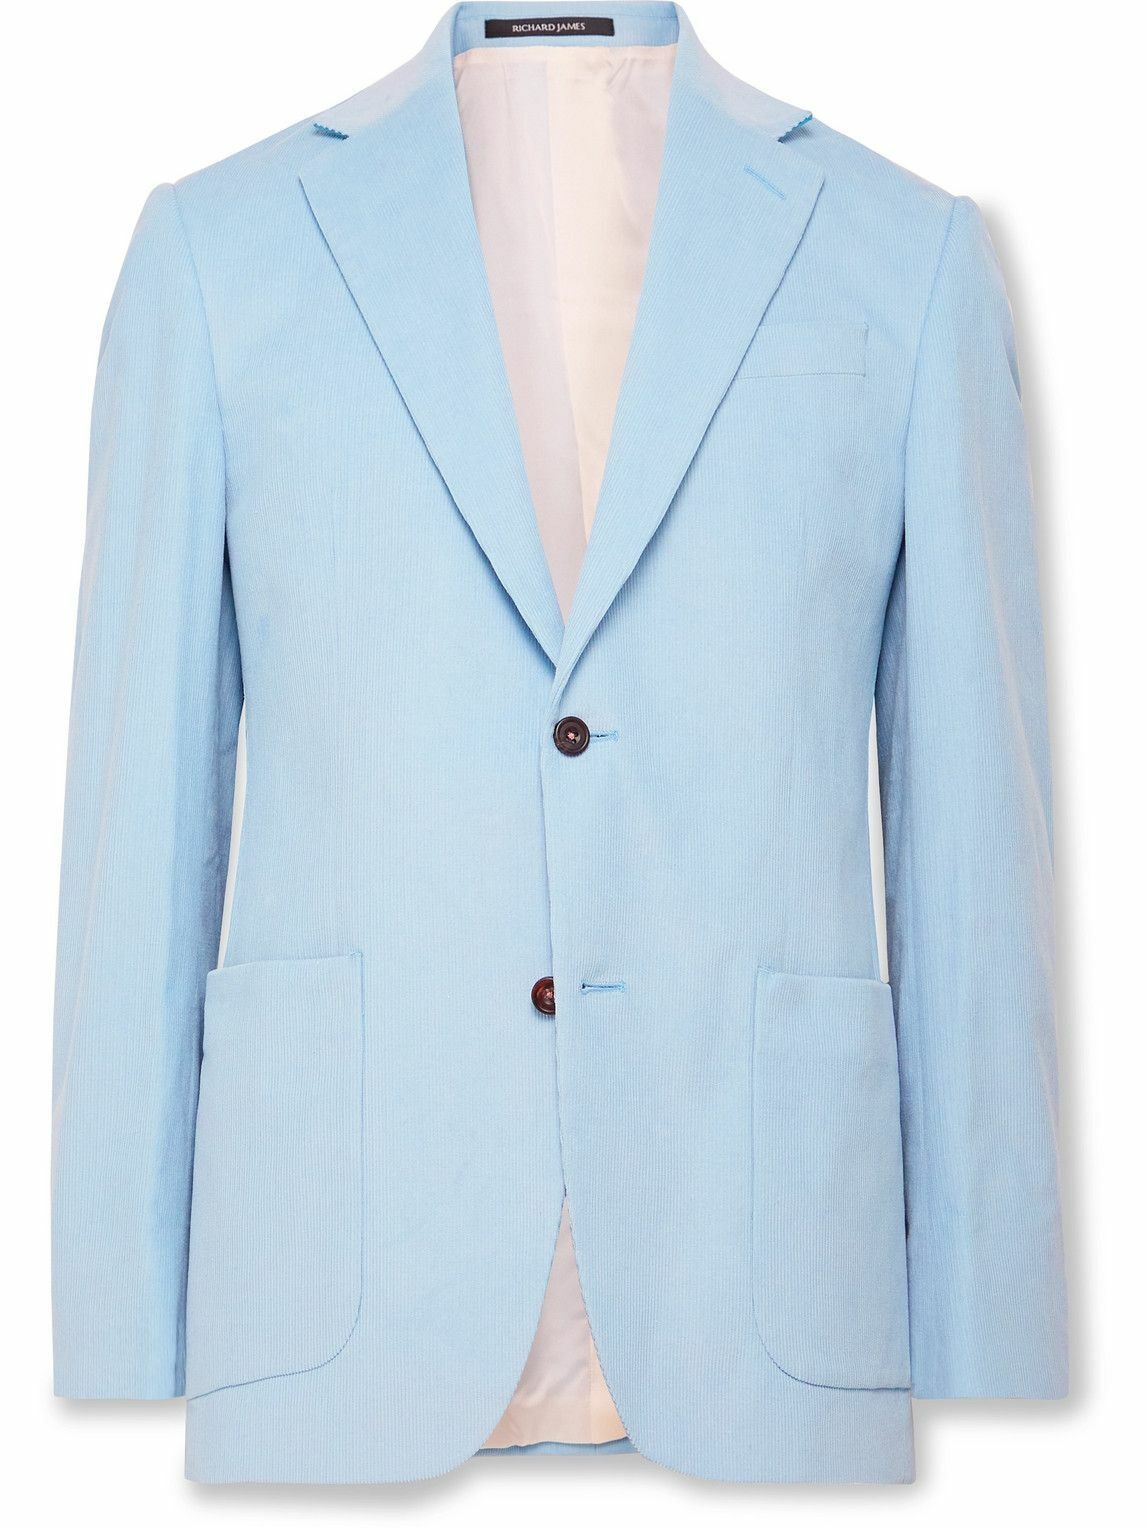 Richard James - Slim-Fit Cotton-Corduroy Suit Jacket - Blue Richard James